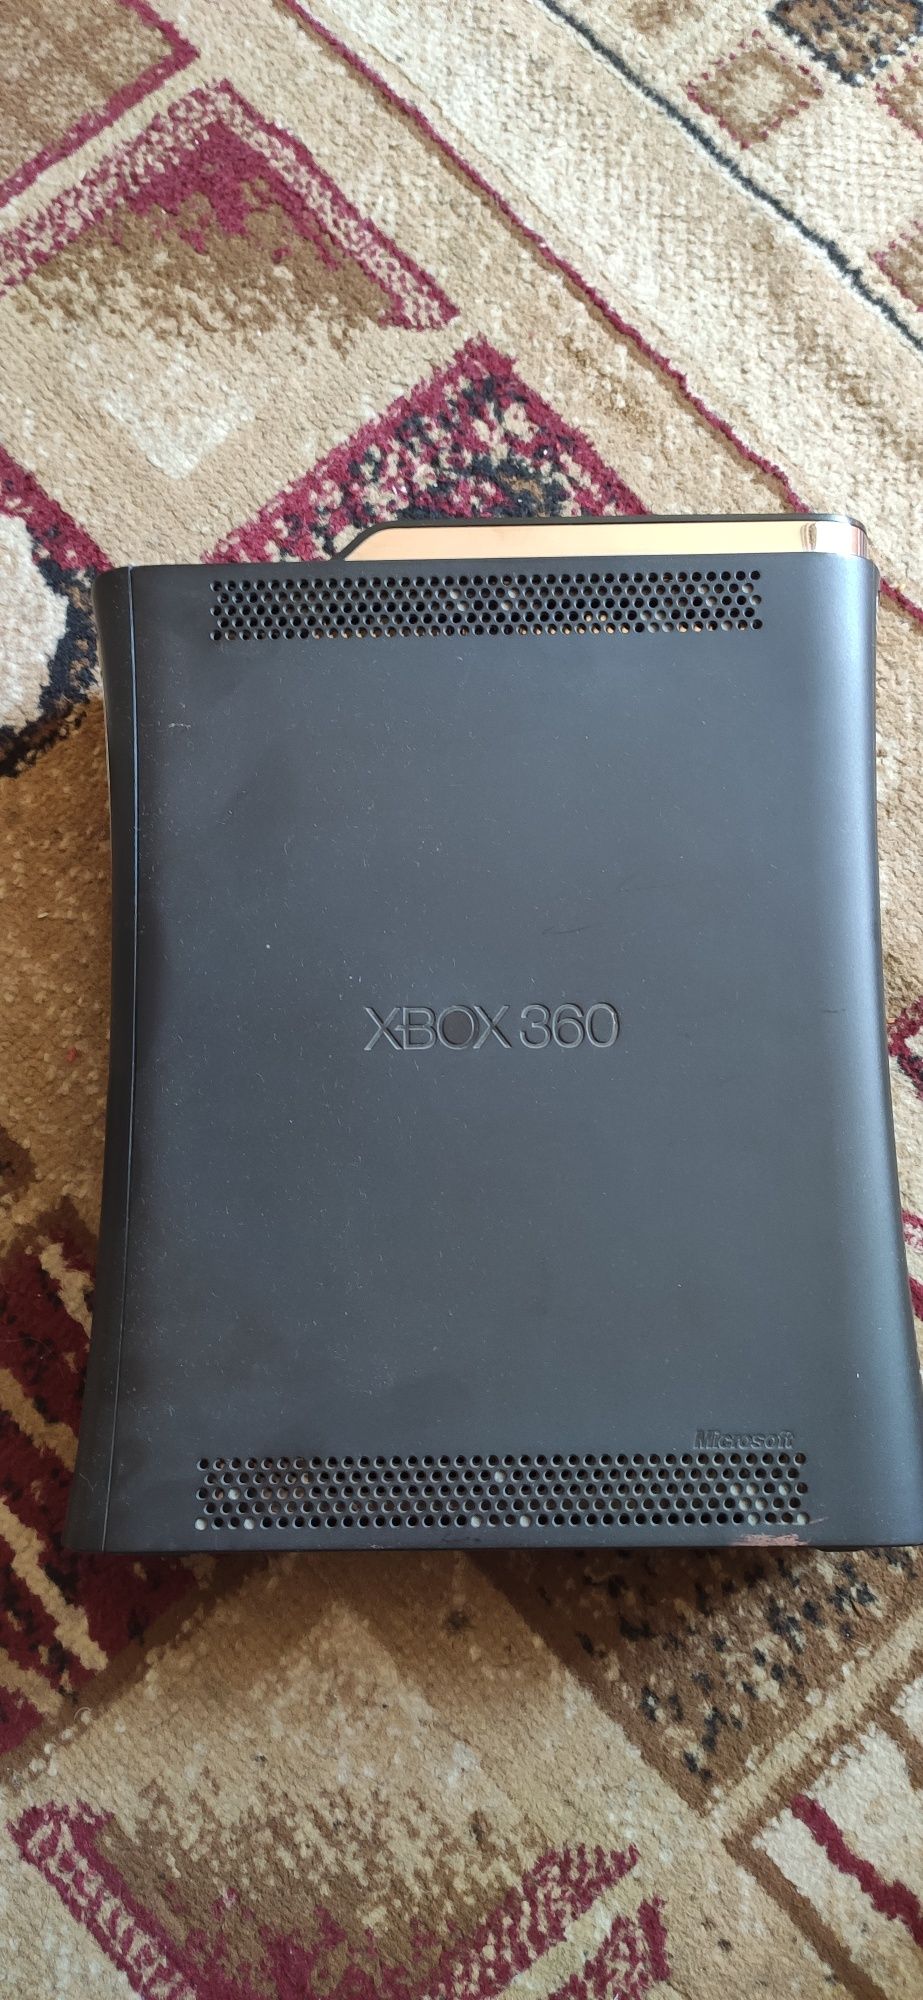 Plesh teshen XBOX360